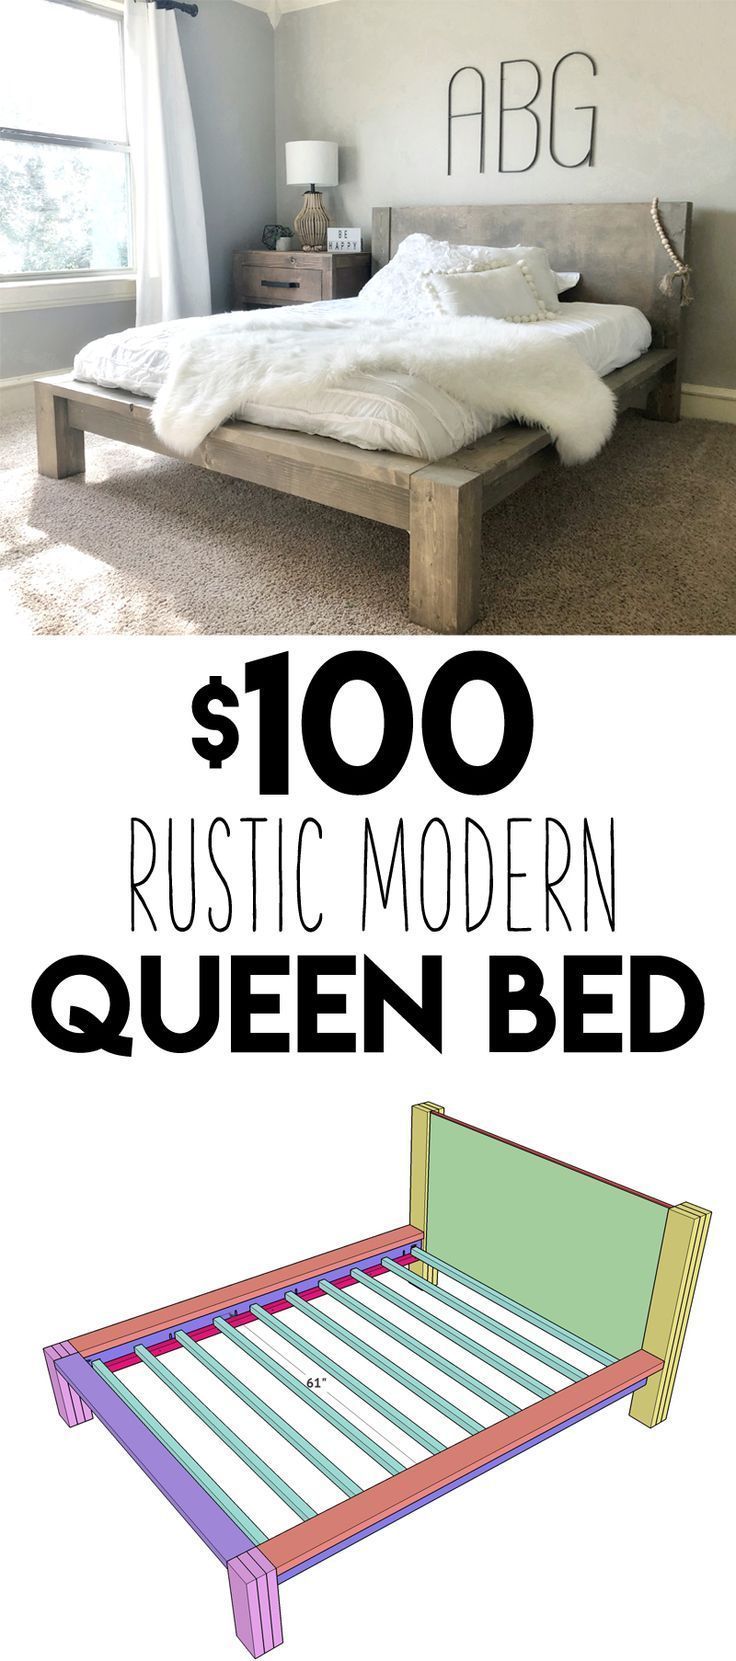 DIY $100 Rustic Modern Queen Bed Free Plans & Tutorial! - DIY $100 Rustic Modern Queen Bed Free Plans & Tutorial! -   16 diy Furniture livingroom ideas